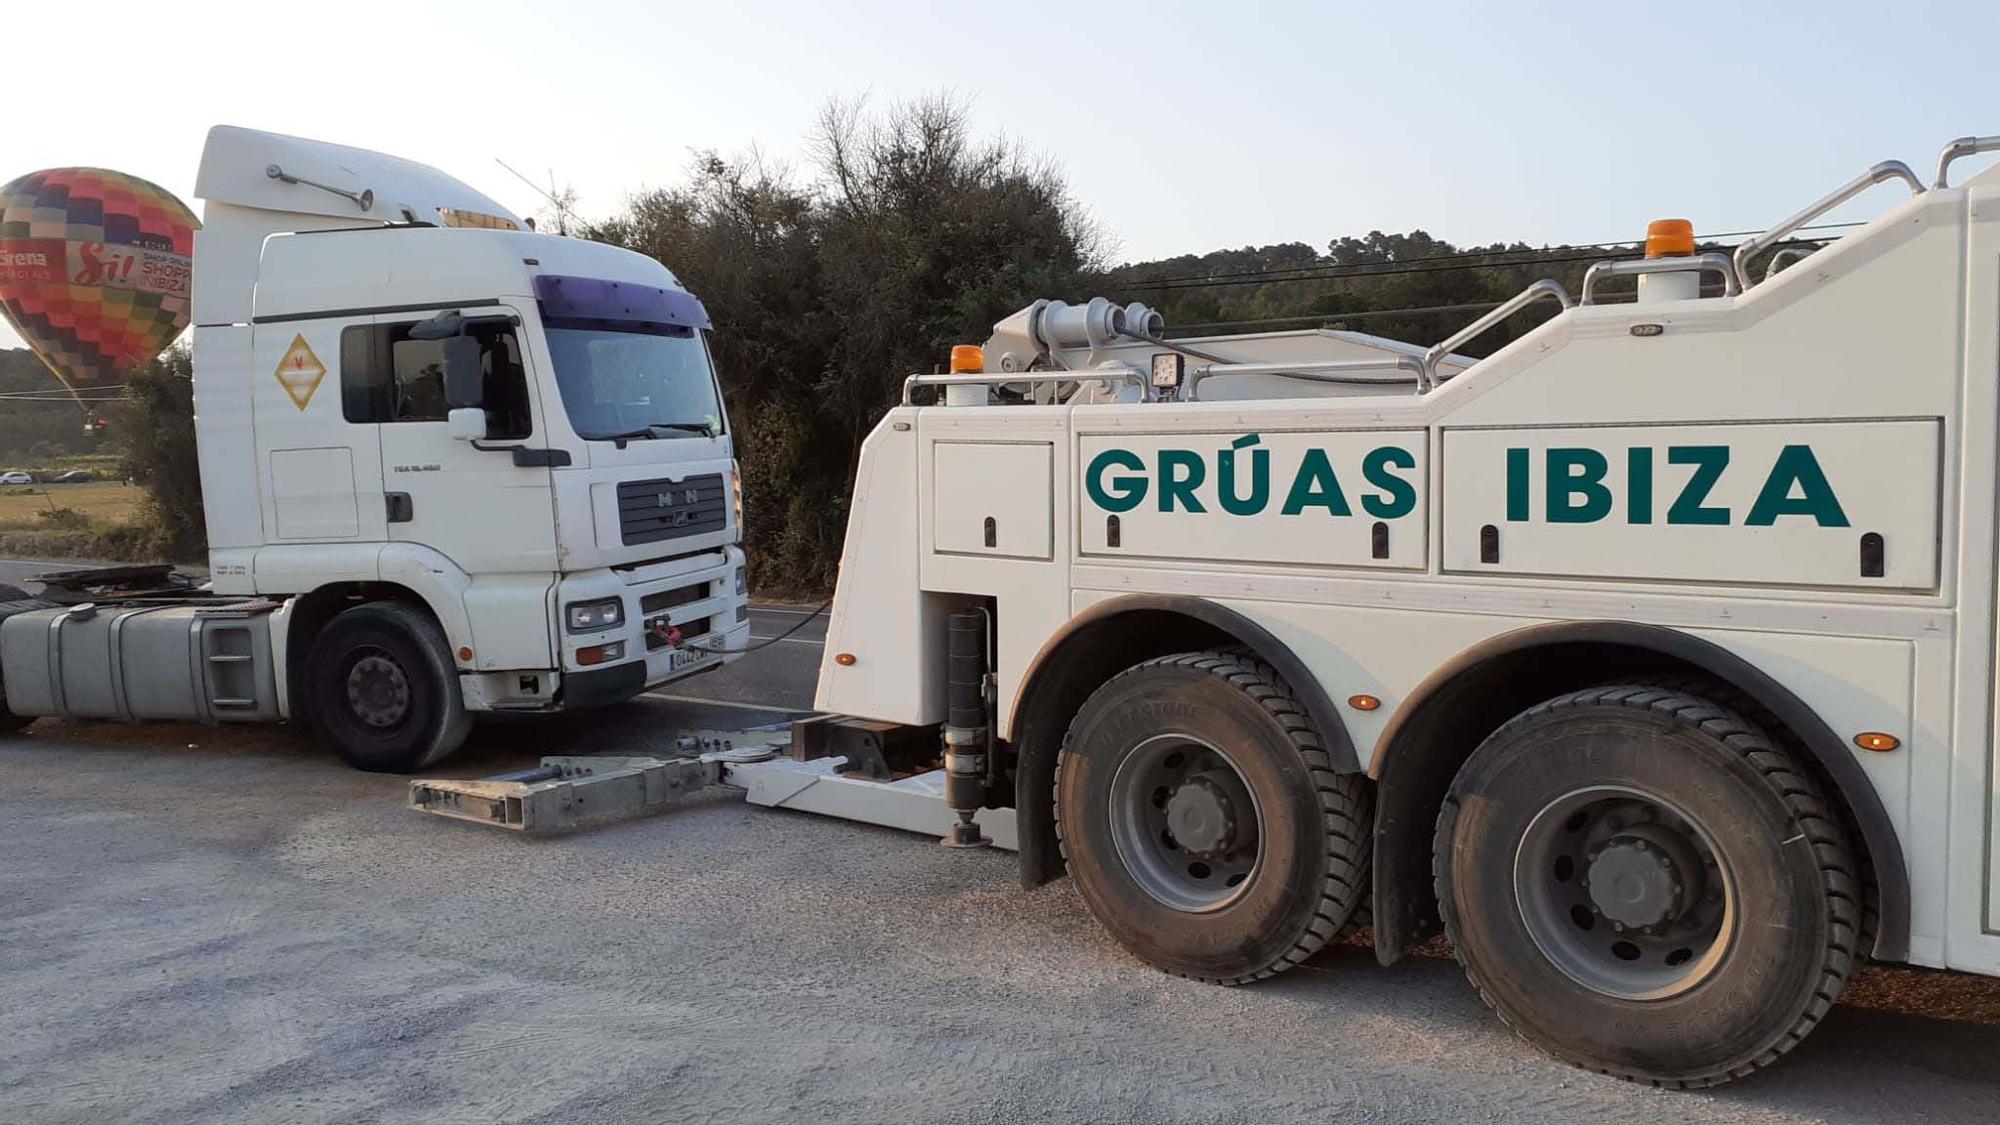 Una mujer queda atrapada en su coche en Ibiza tras chocar con un camión